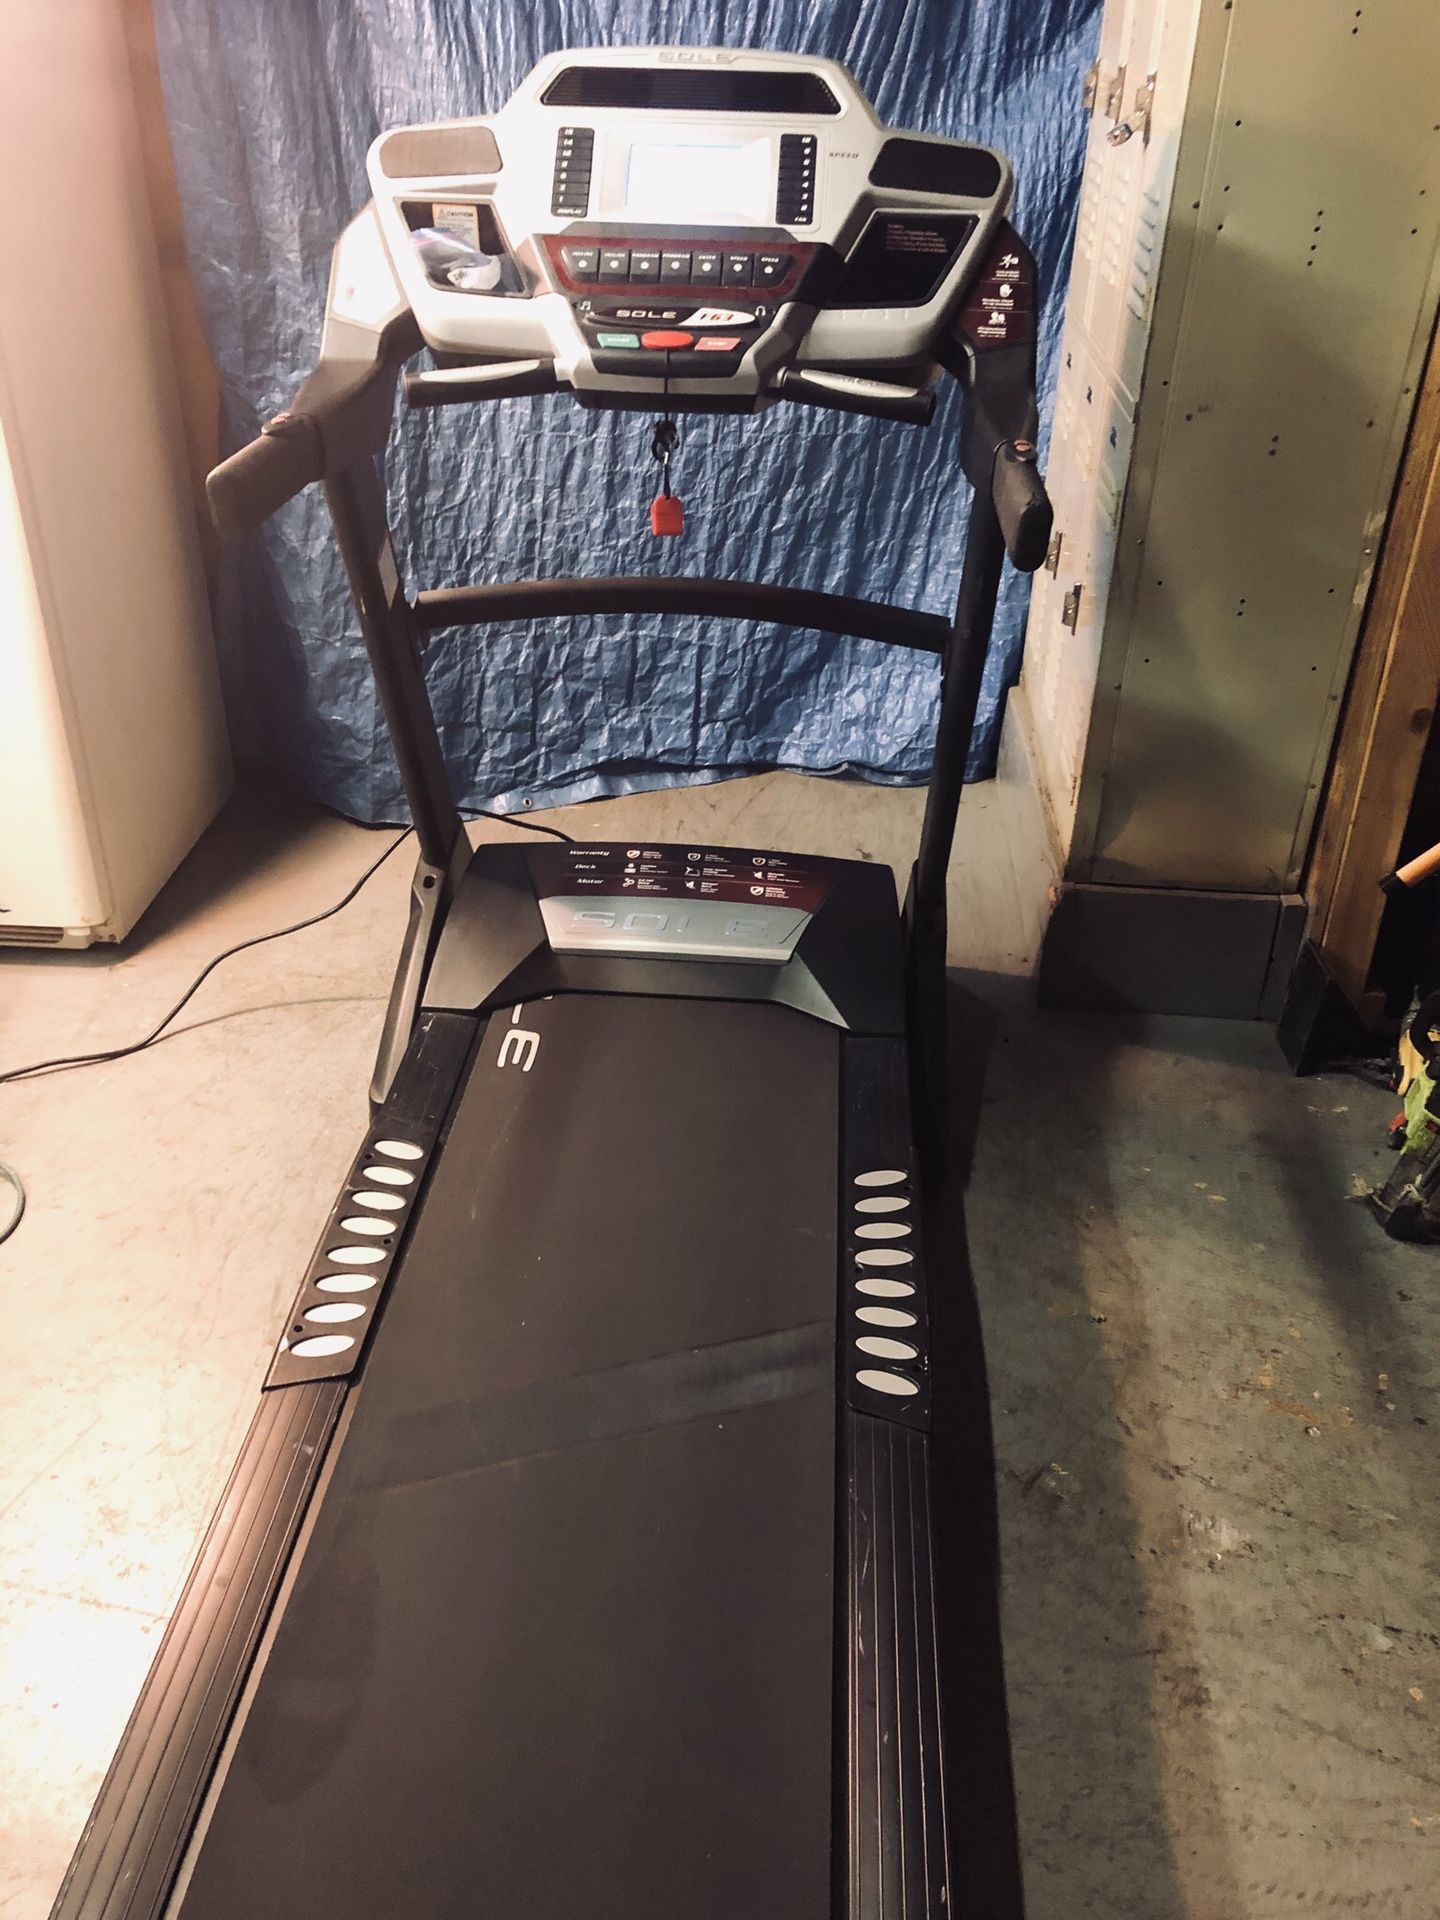 treadmill Sole f63